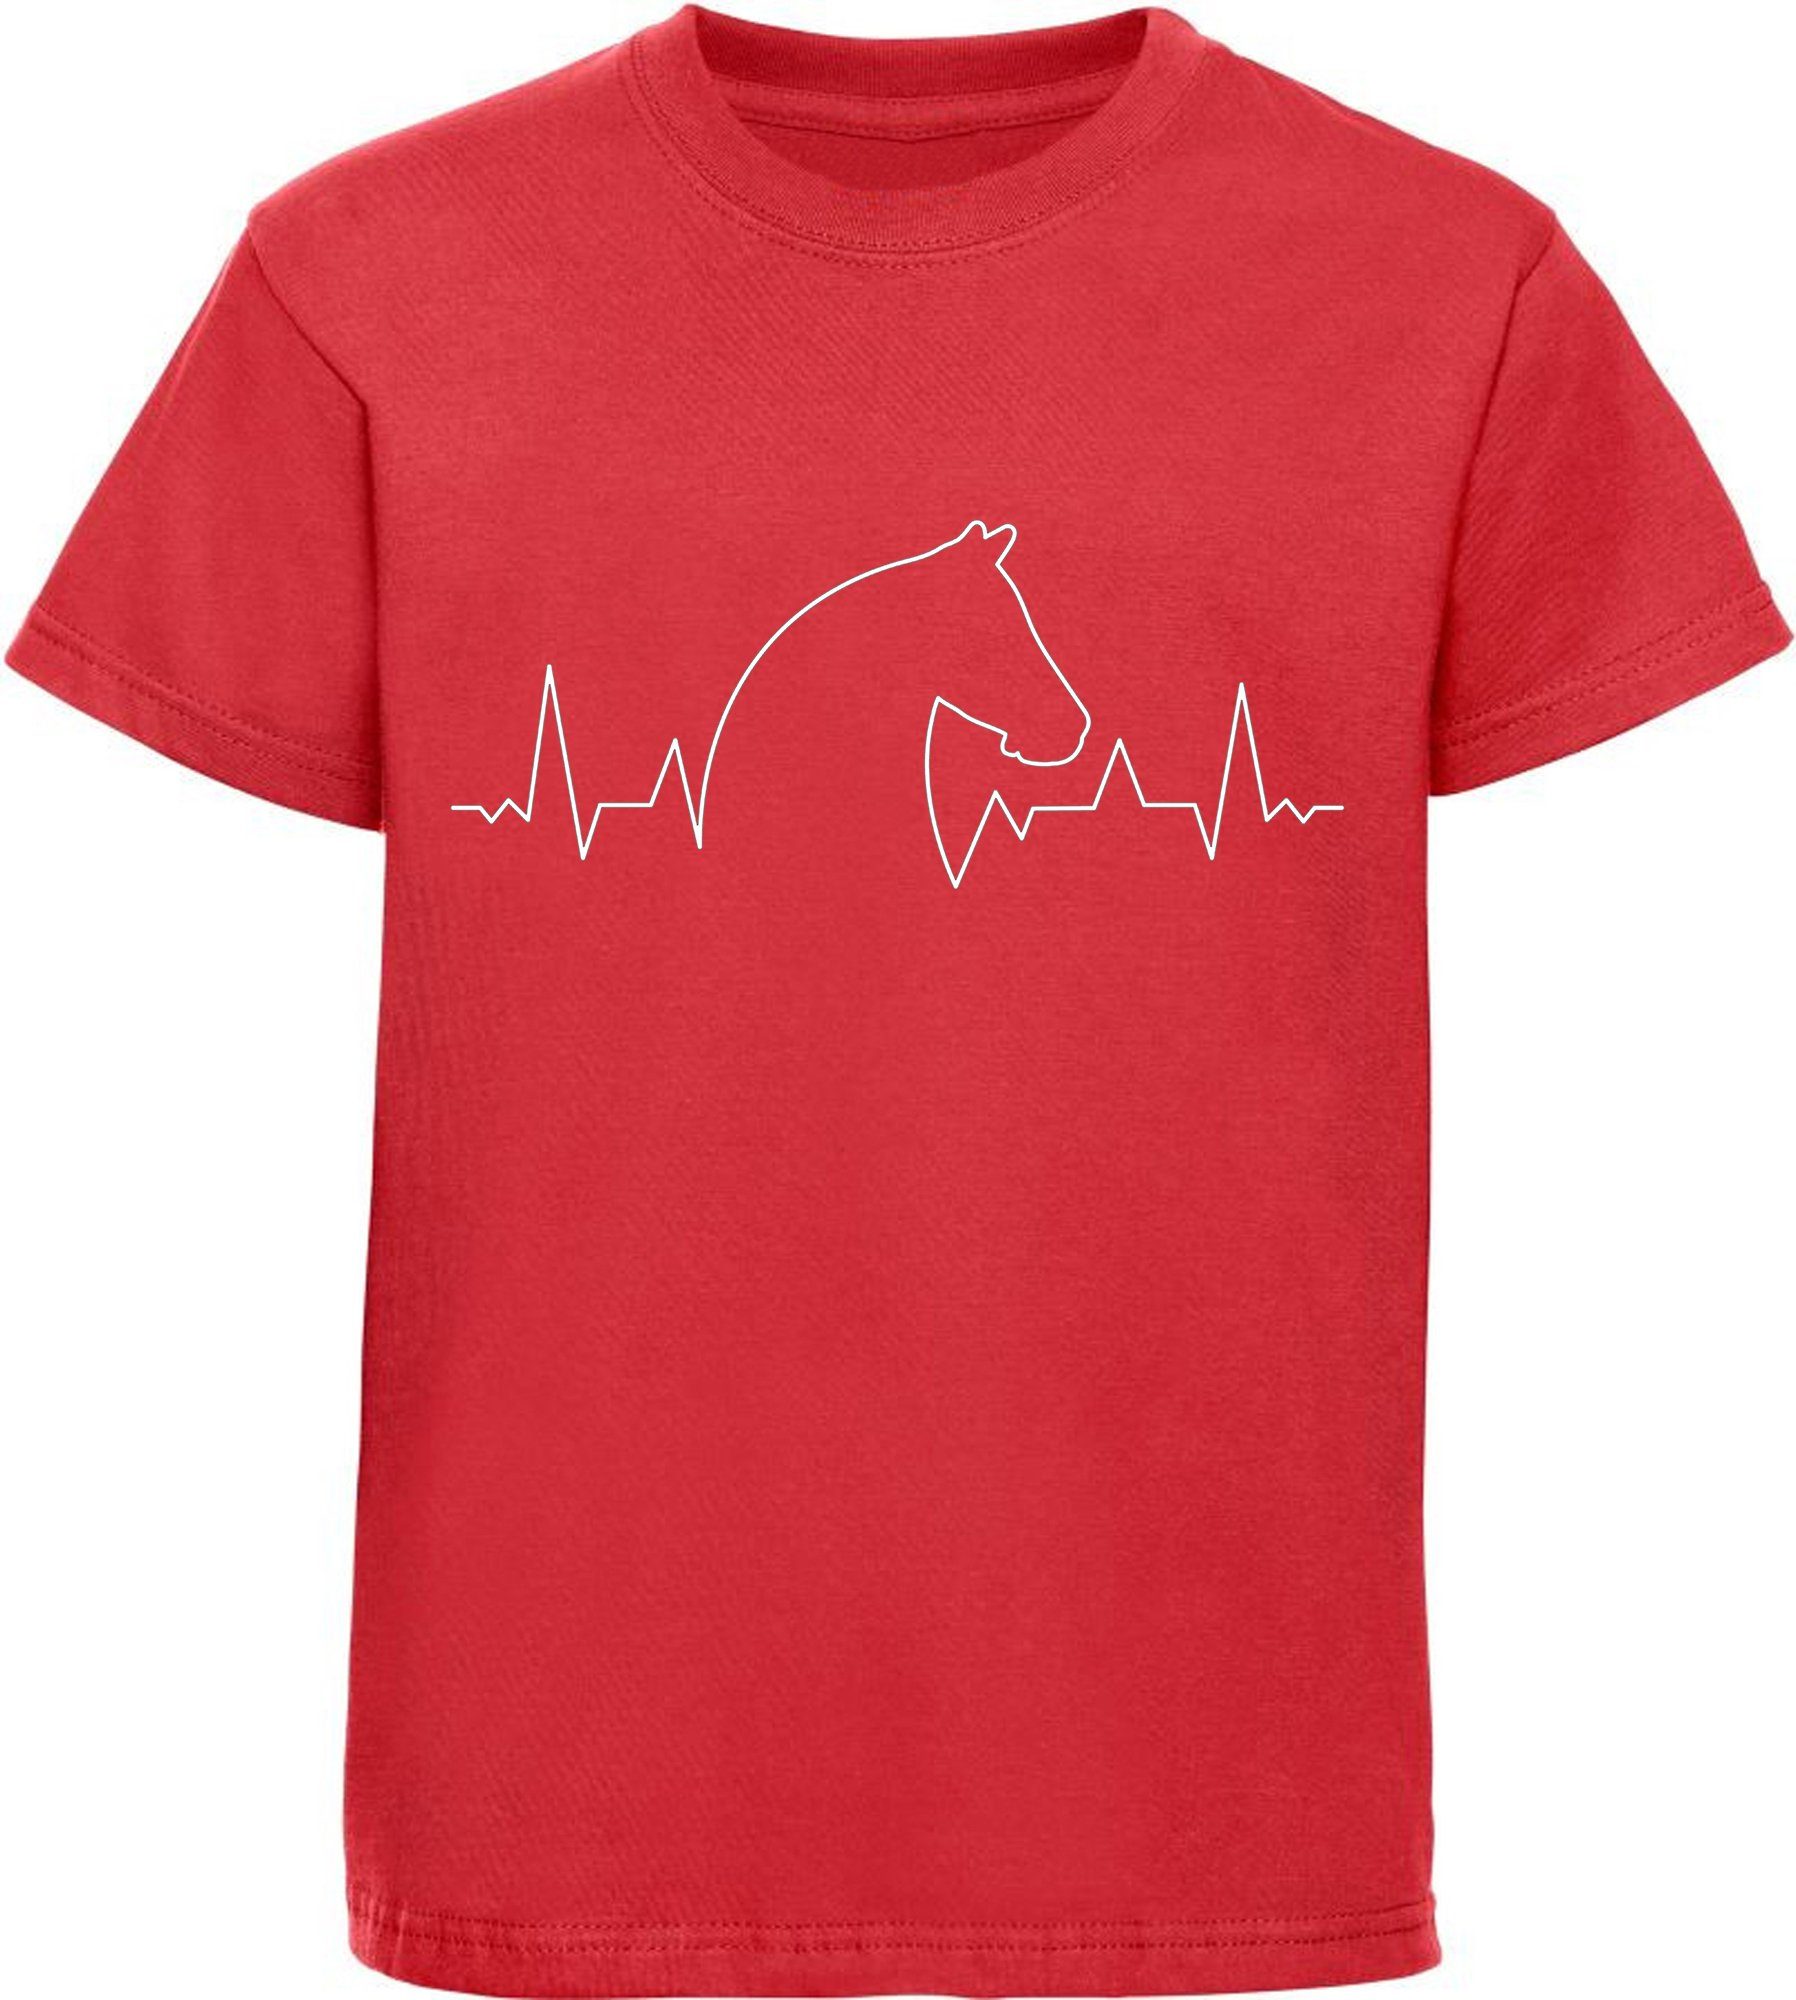 MyDesign24 Kinder mit T-Shirt Herzschlaglinie Pferdekopf Print-Shirt i154 bedrucktes rot Baumwollshirt mit Aufdruck,